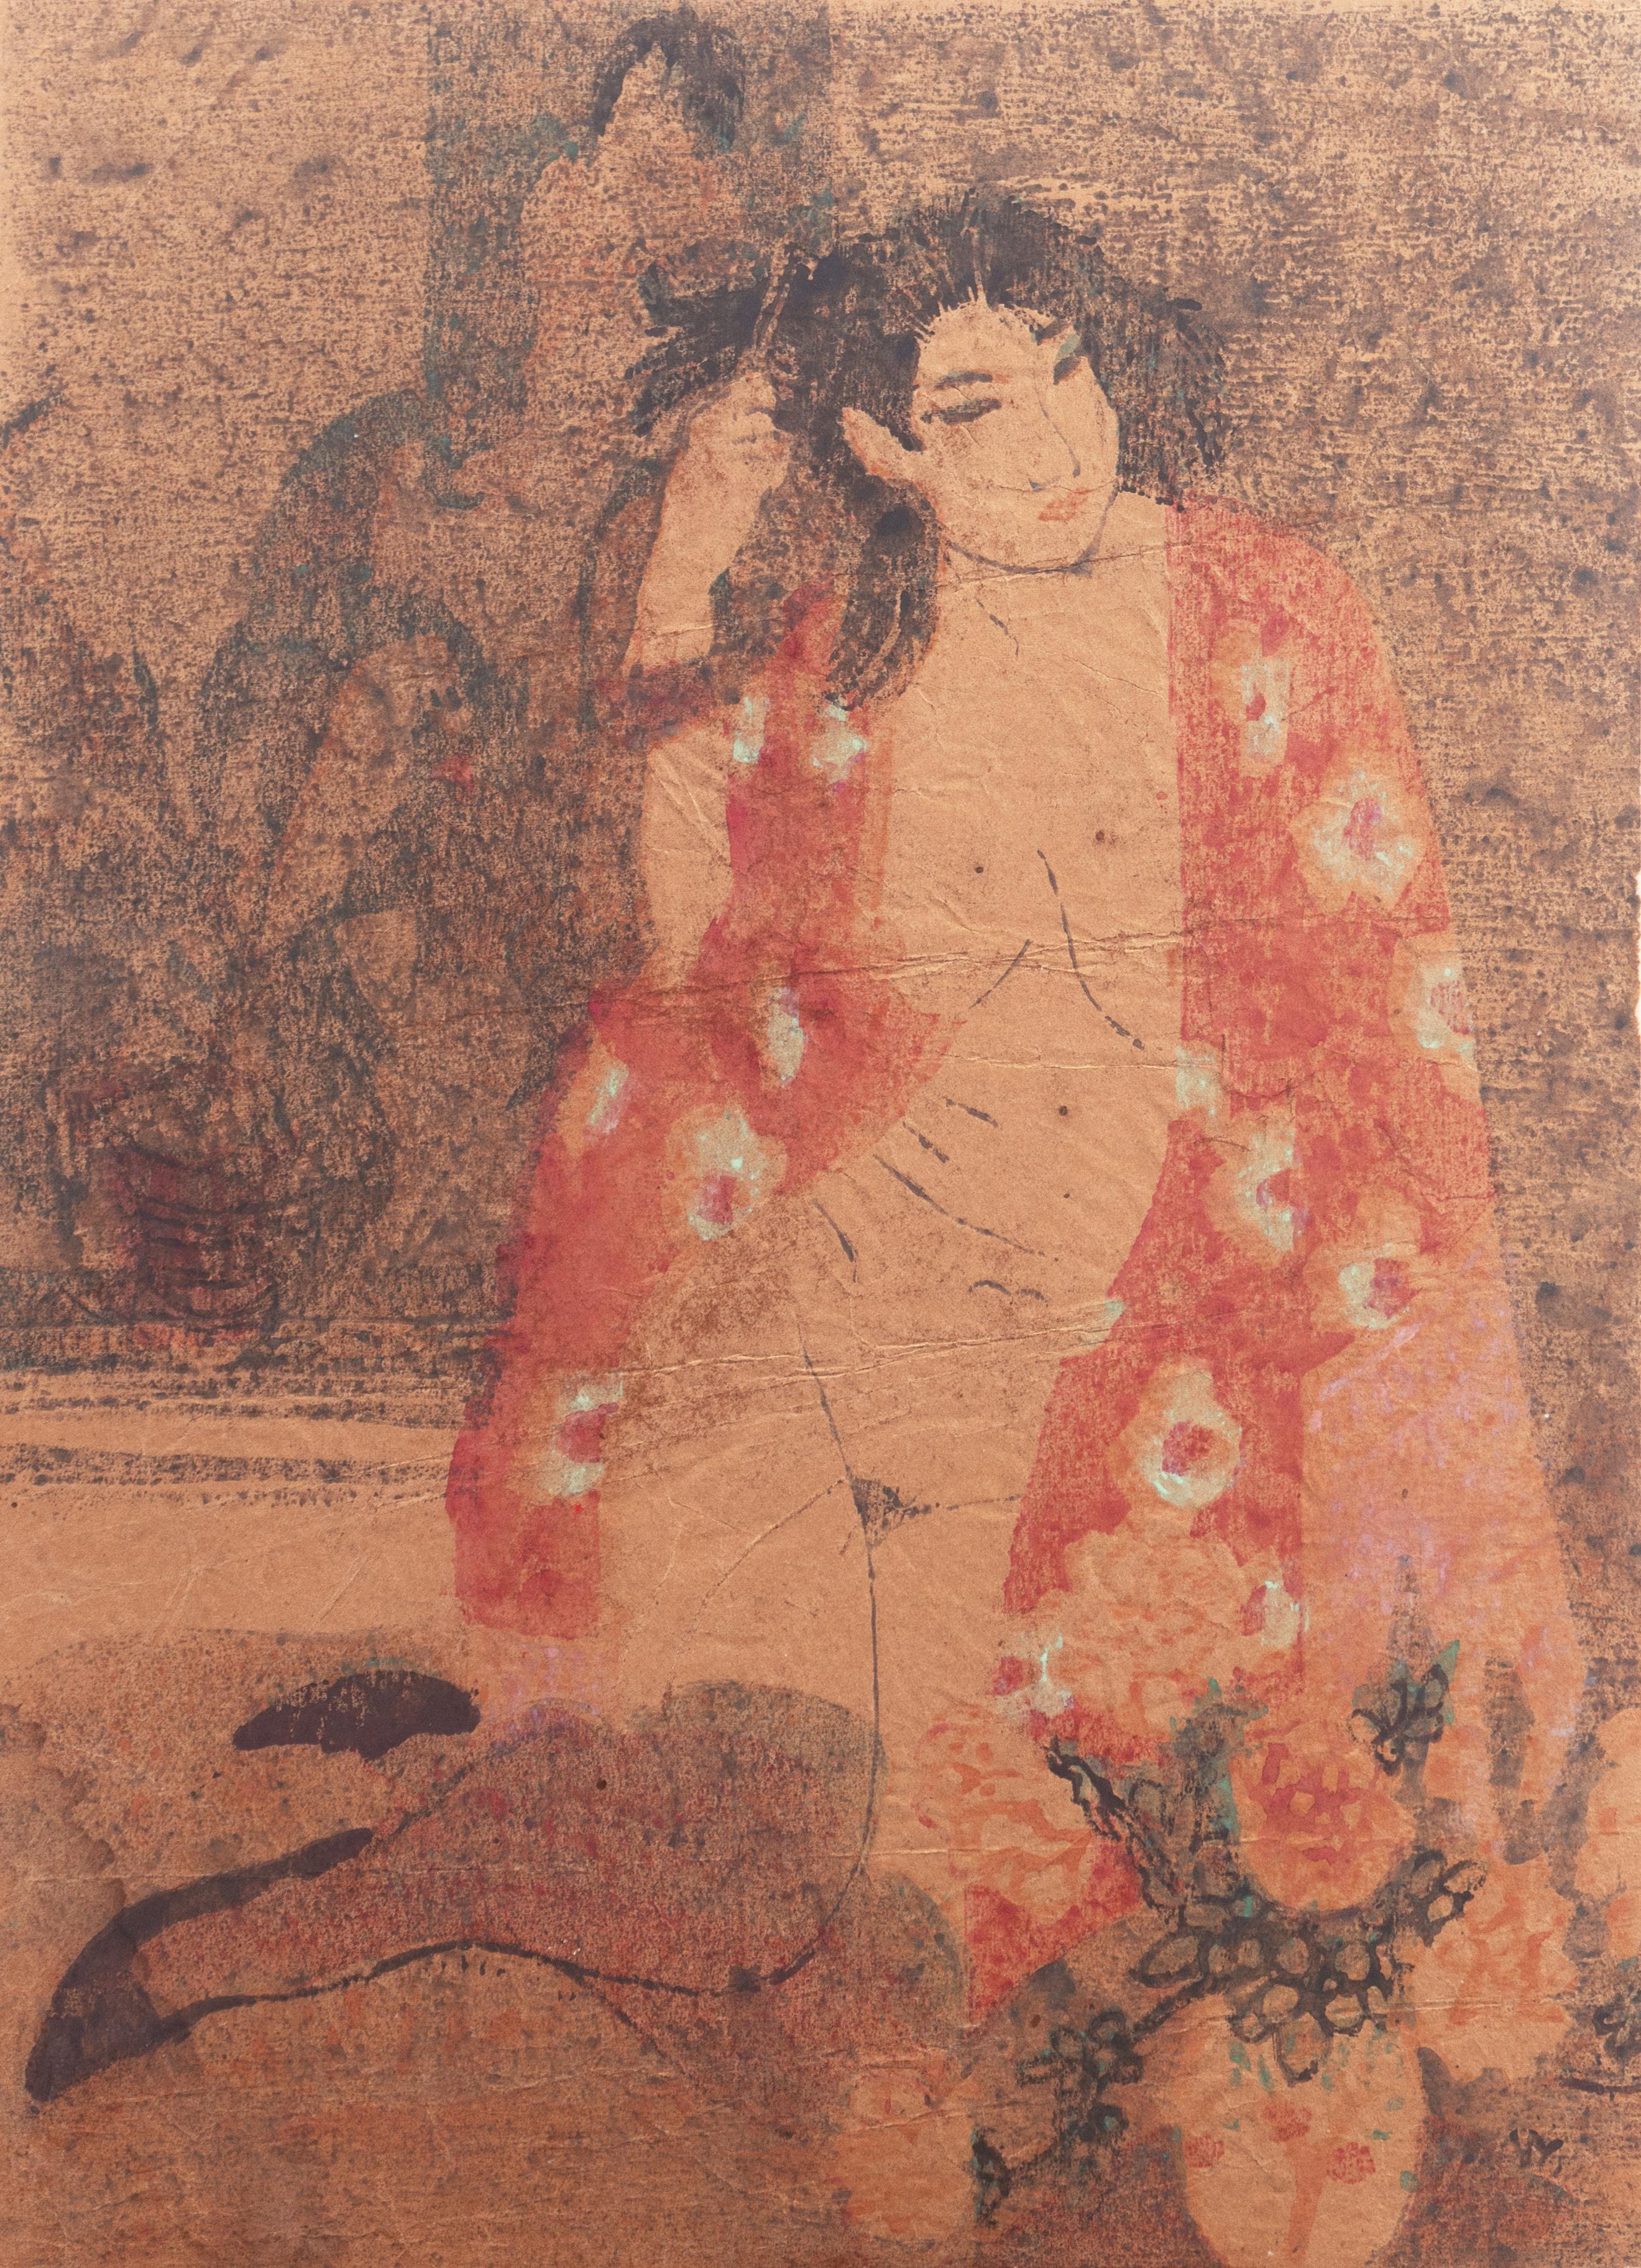 Victor Di Gesu Interior Print - 'Woman in Kimono', Louvre, Academie Chaumiere, Paris, California, SFAA, LACMA